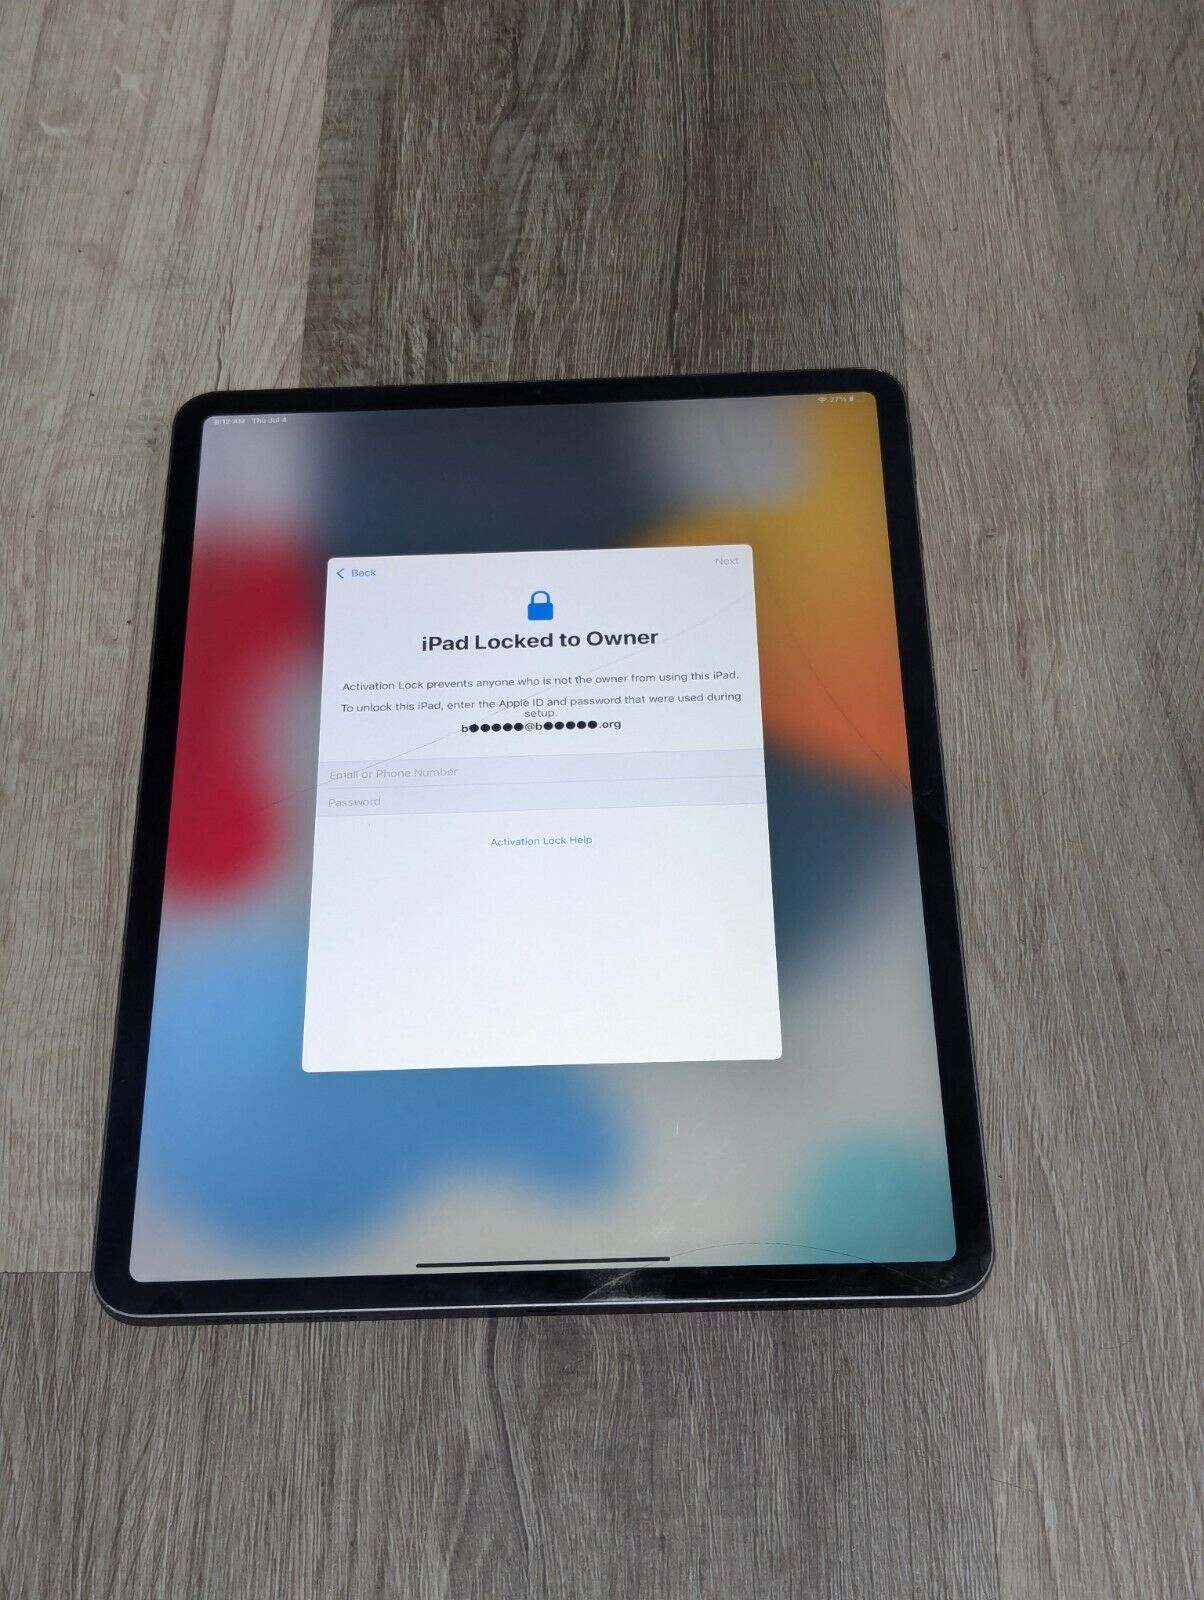 Apple iPad Pro 3rd Gen. 256GB, Wi-Fi, 12.9 in -Space Gray (Broken screen-Locked)